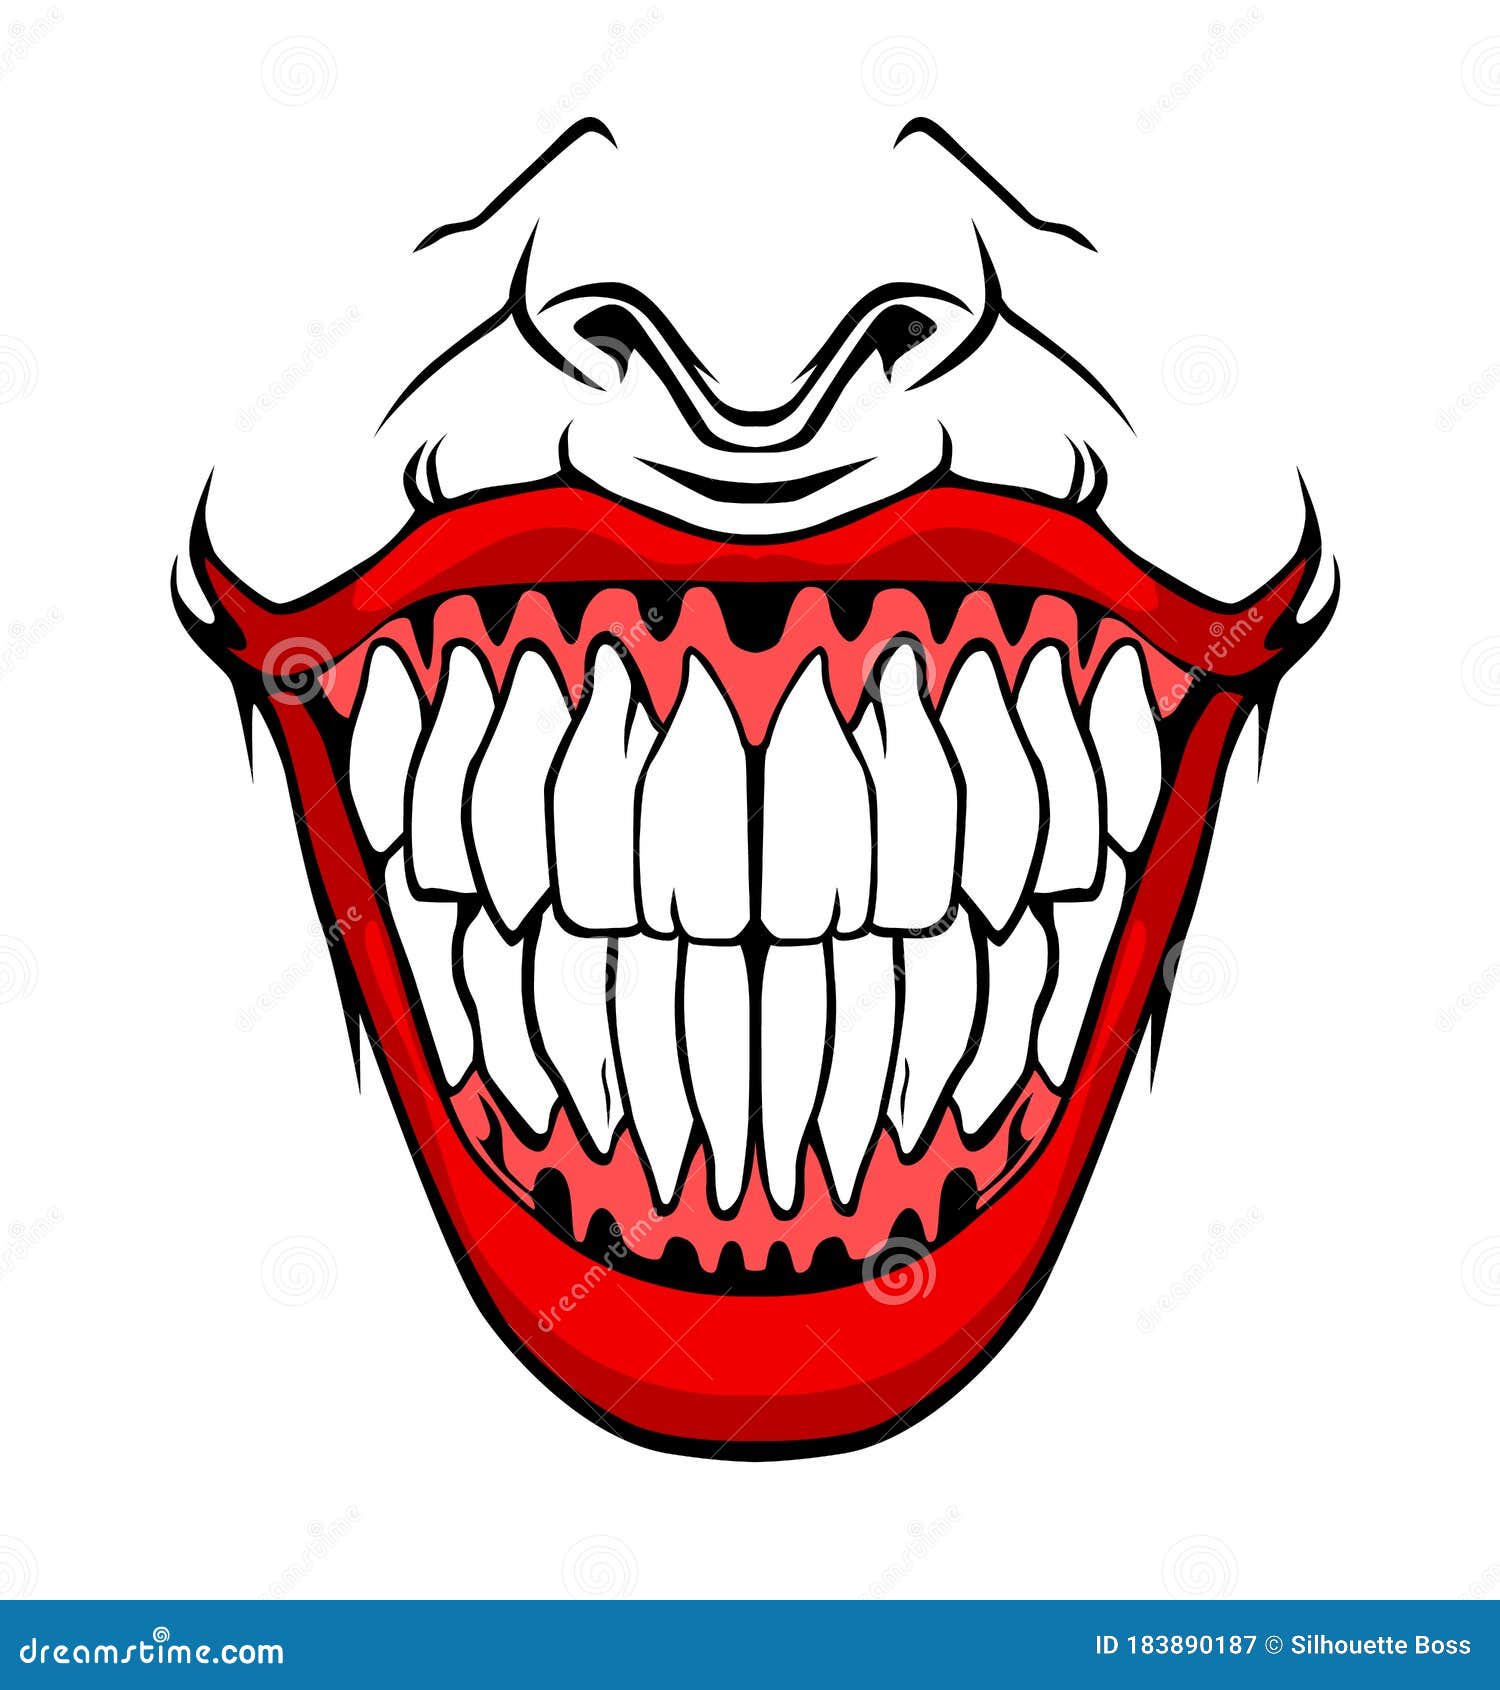 Evil Clown / Creepy Clown or Horror Clown, Clown Horror Smiley Face ...